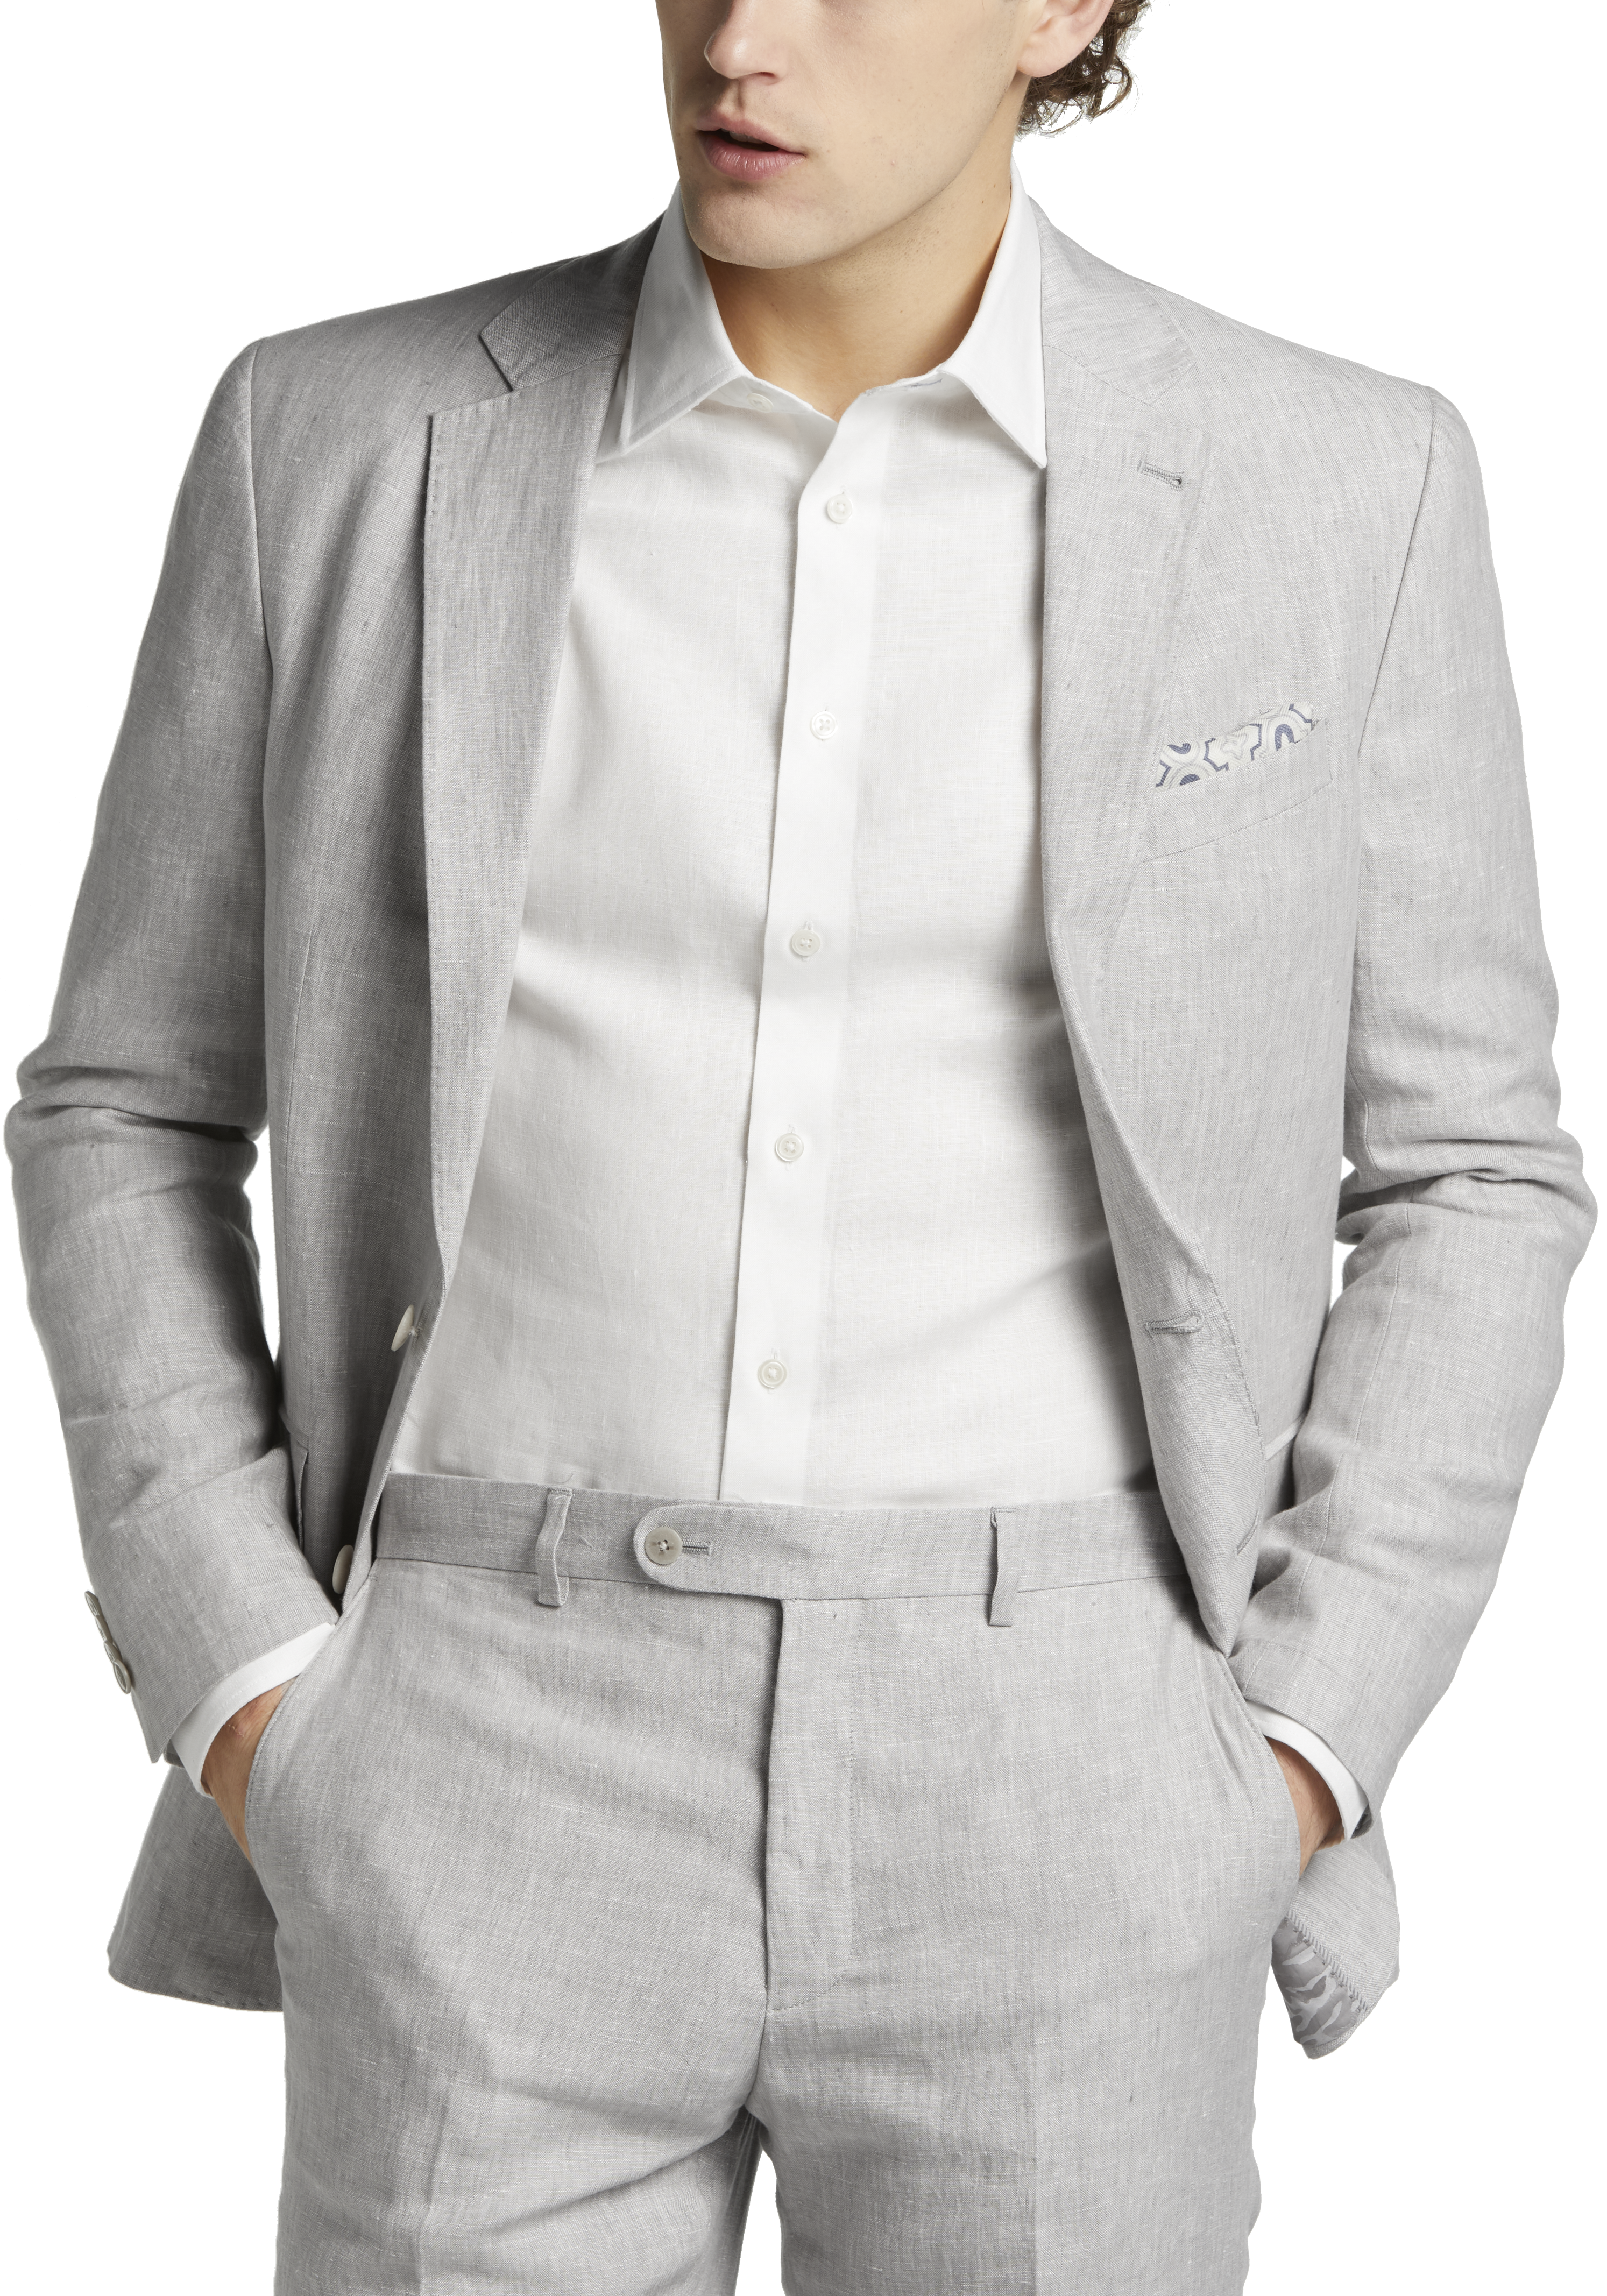 JOE Joseph Abboud Linen Slim Fit Suit Separates, Light Gray - - Men's Wearhouse